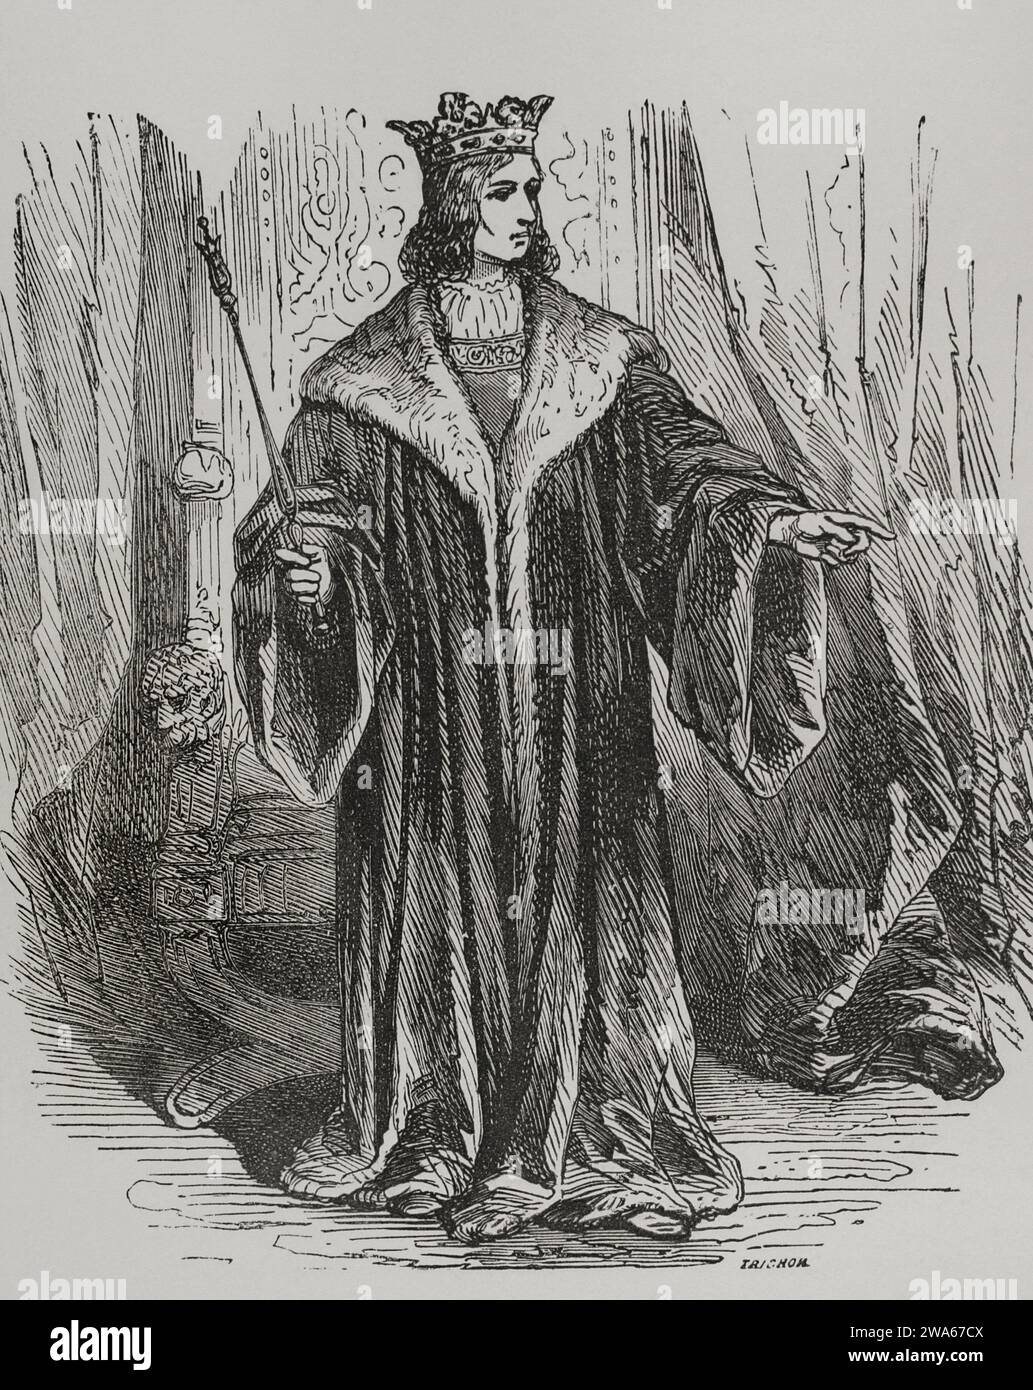 Luigi IX o Saint Louis (1214-1270). Re di Francia (1226-1270). Ritratto. Incisione di Trichon. Los Heroes y las Grandezas de la Tierra. Volume V. 1855. Foto Stock